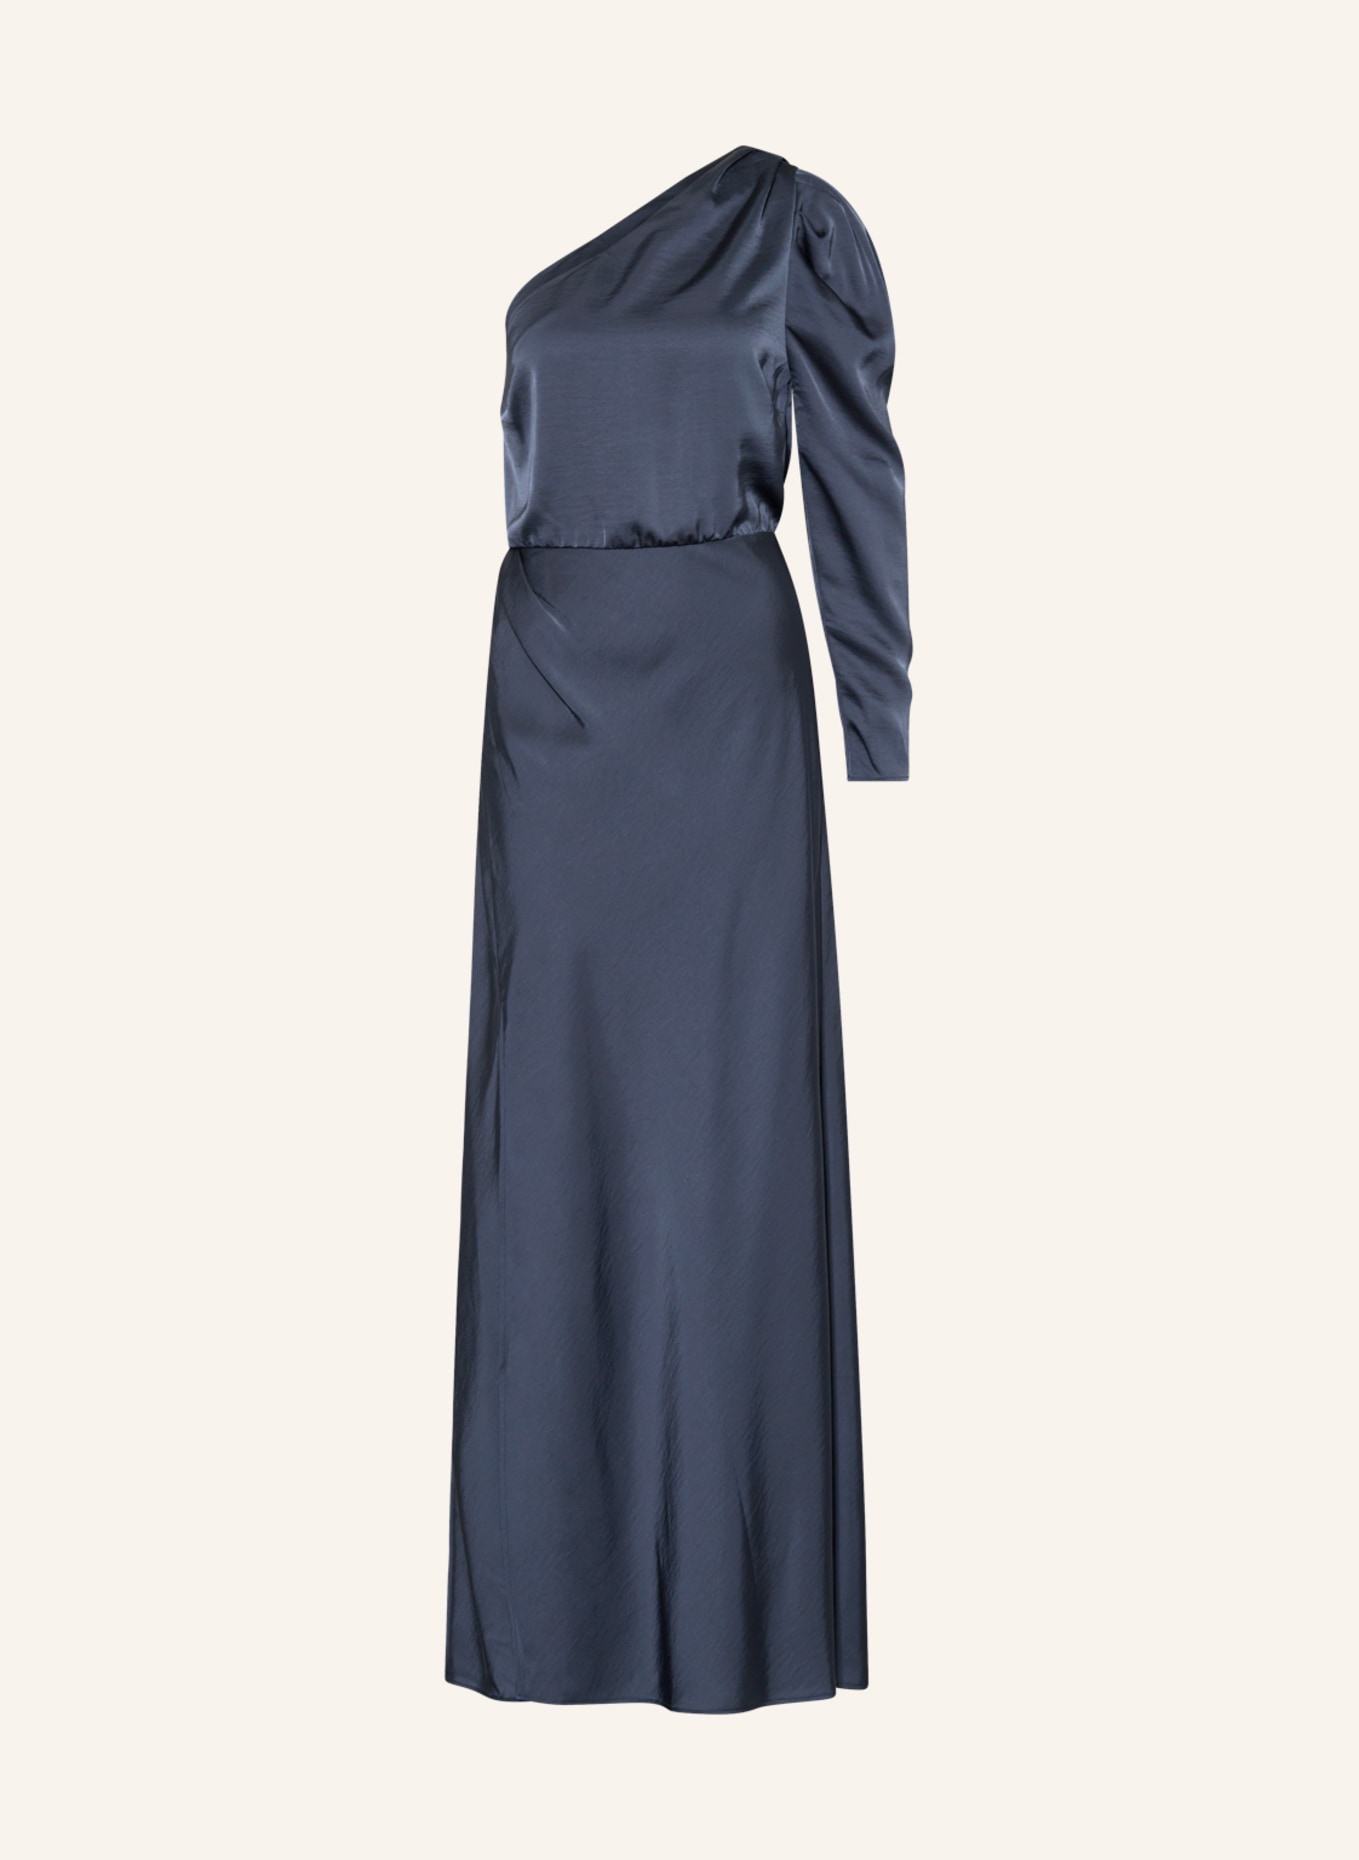 DANTE6 One-shoulder-dress PENRITH made of satin, Color: DARK BLUE (Image 1)